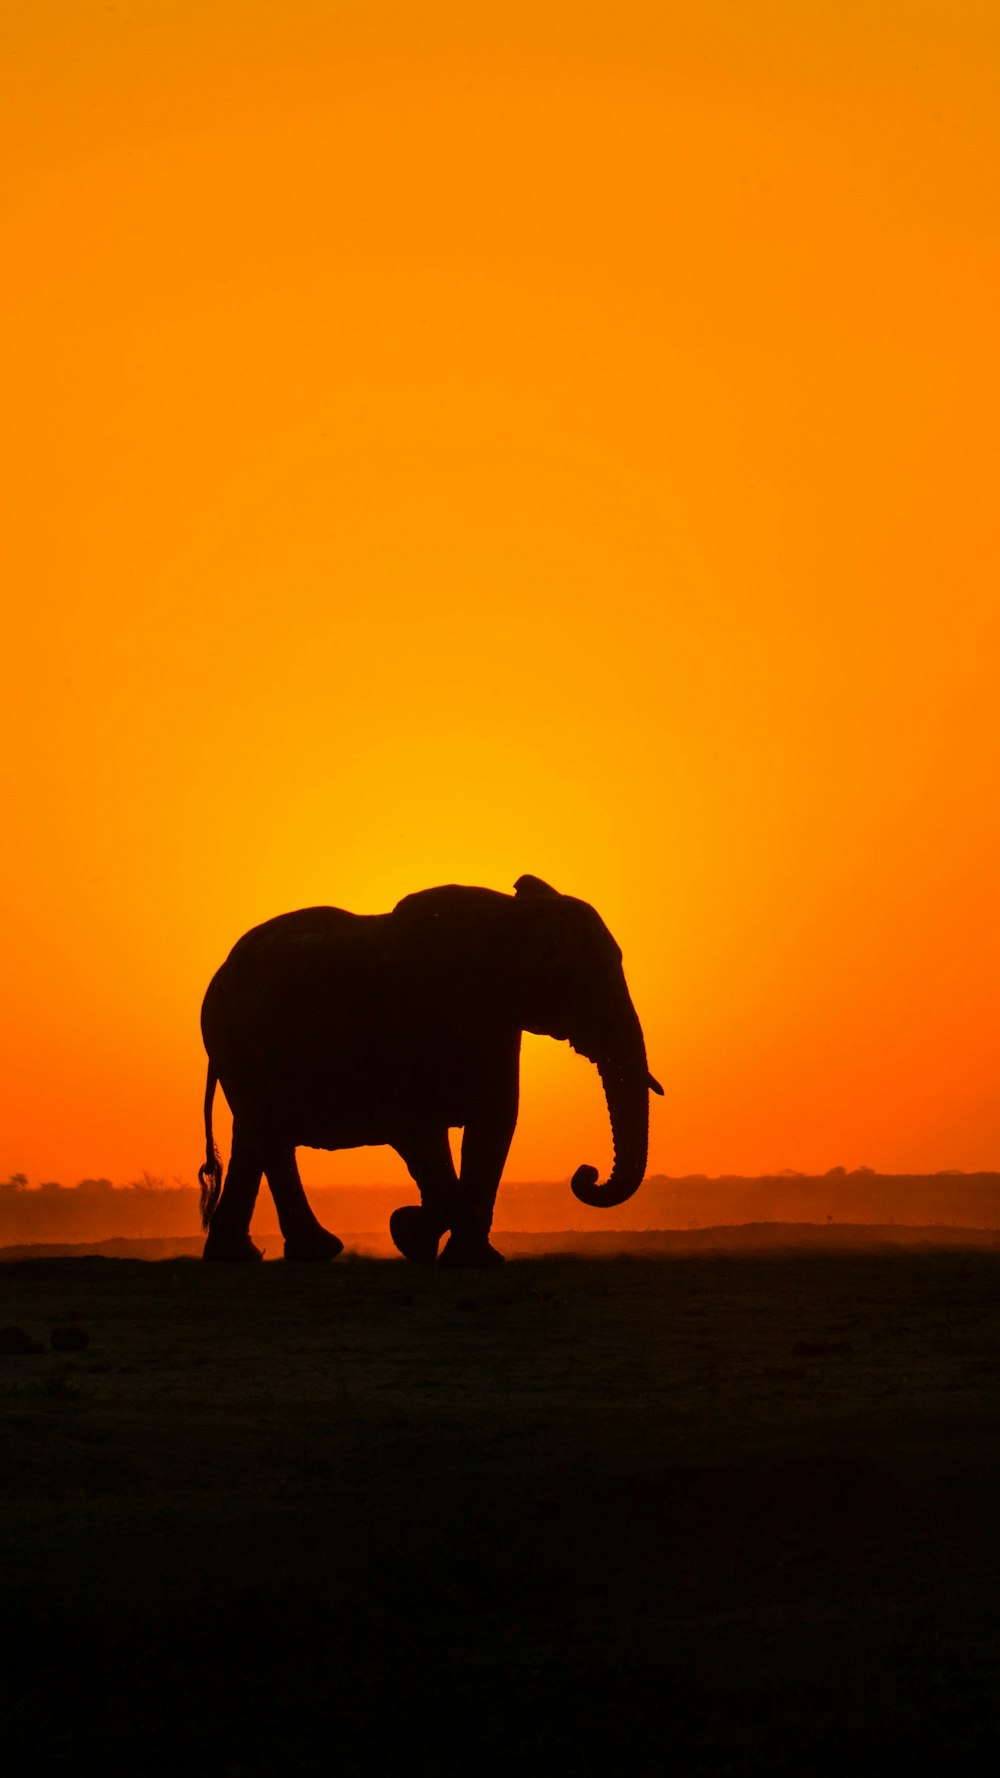 夕暮れ時の茶色の野原を歩く象のシルエット